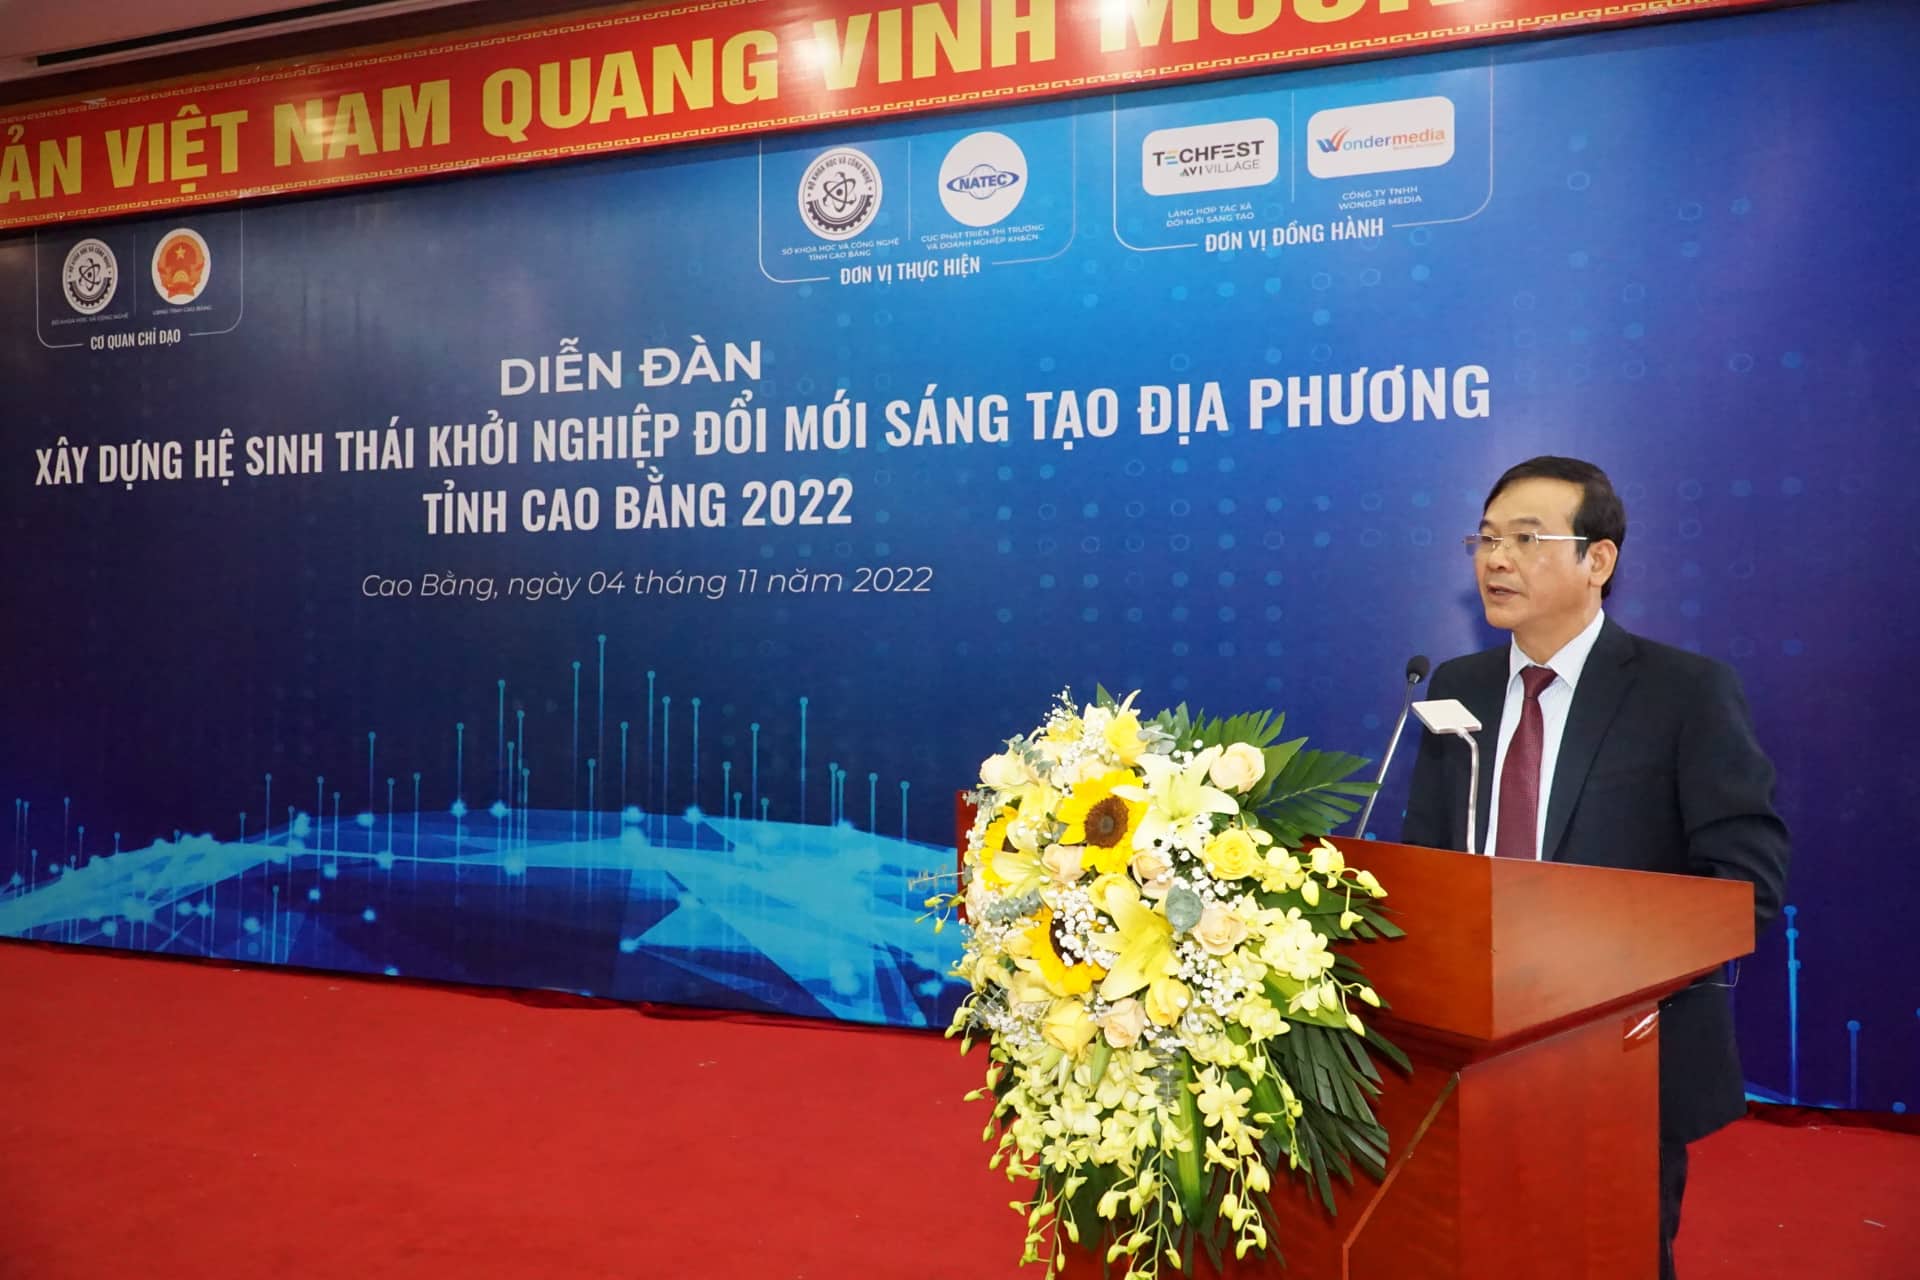 Ông Nguyễn Trung Thảo - Phó Chủ tịch Uỷ ban nhân dân tỉnh Cao Bằng phát biểu tại diễn đàn